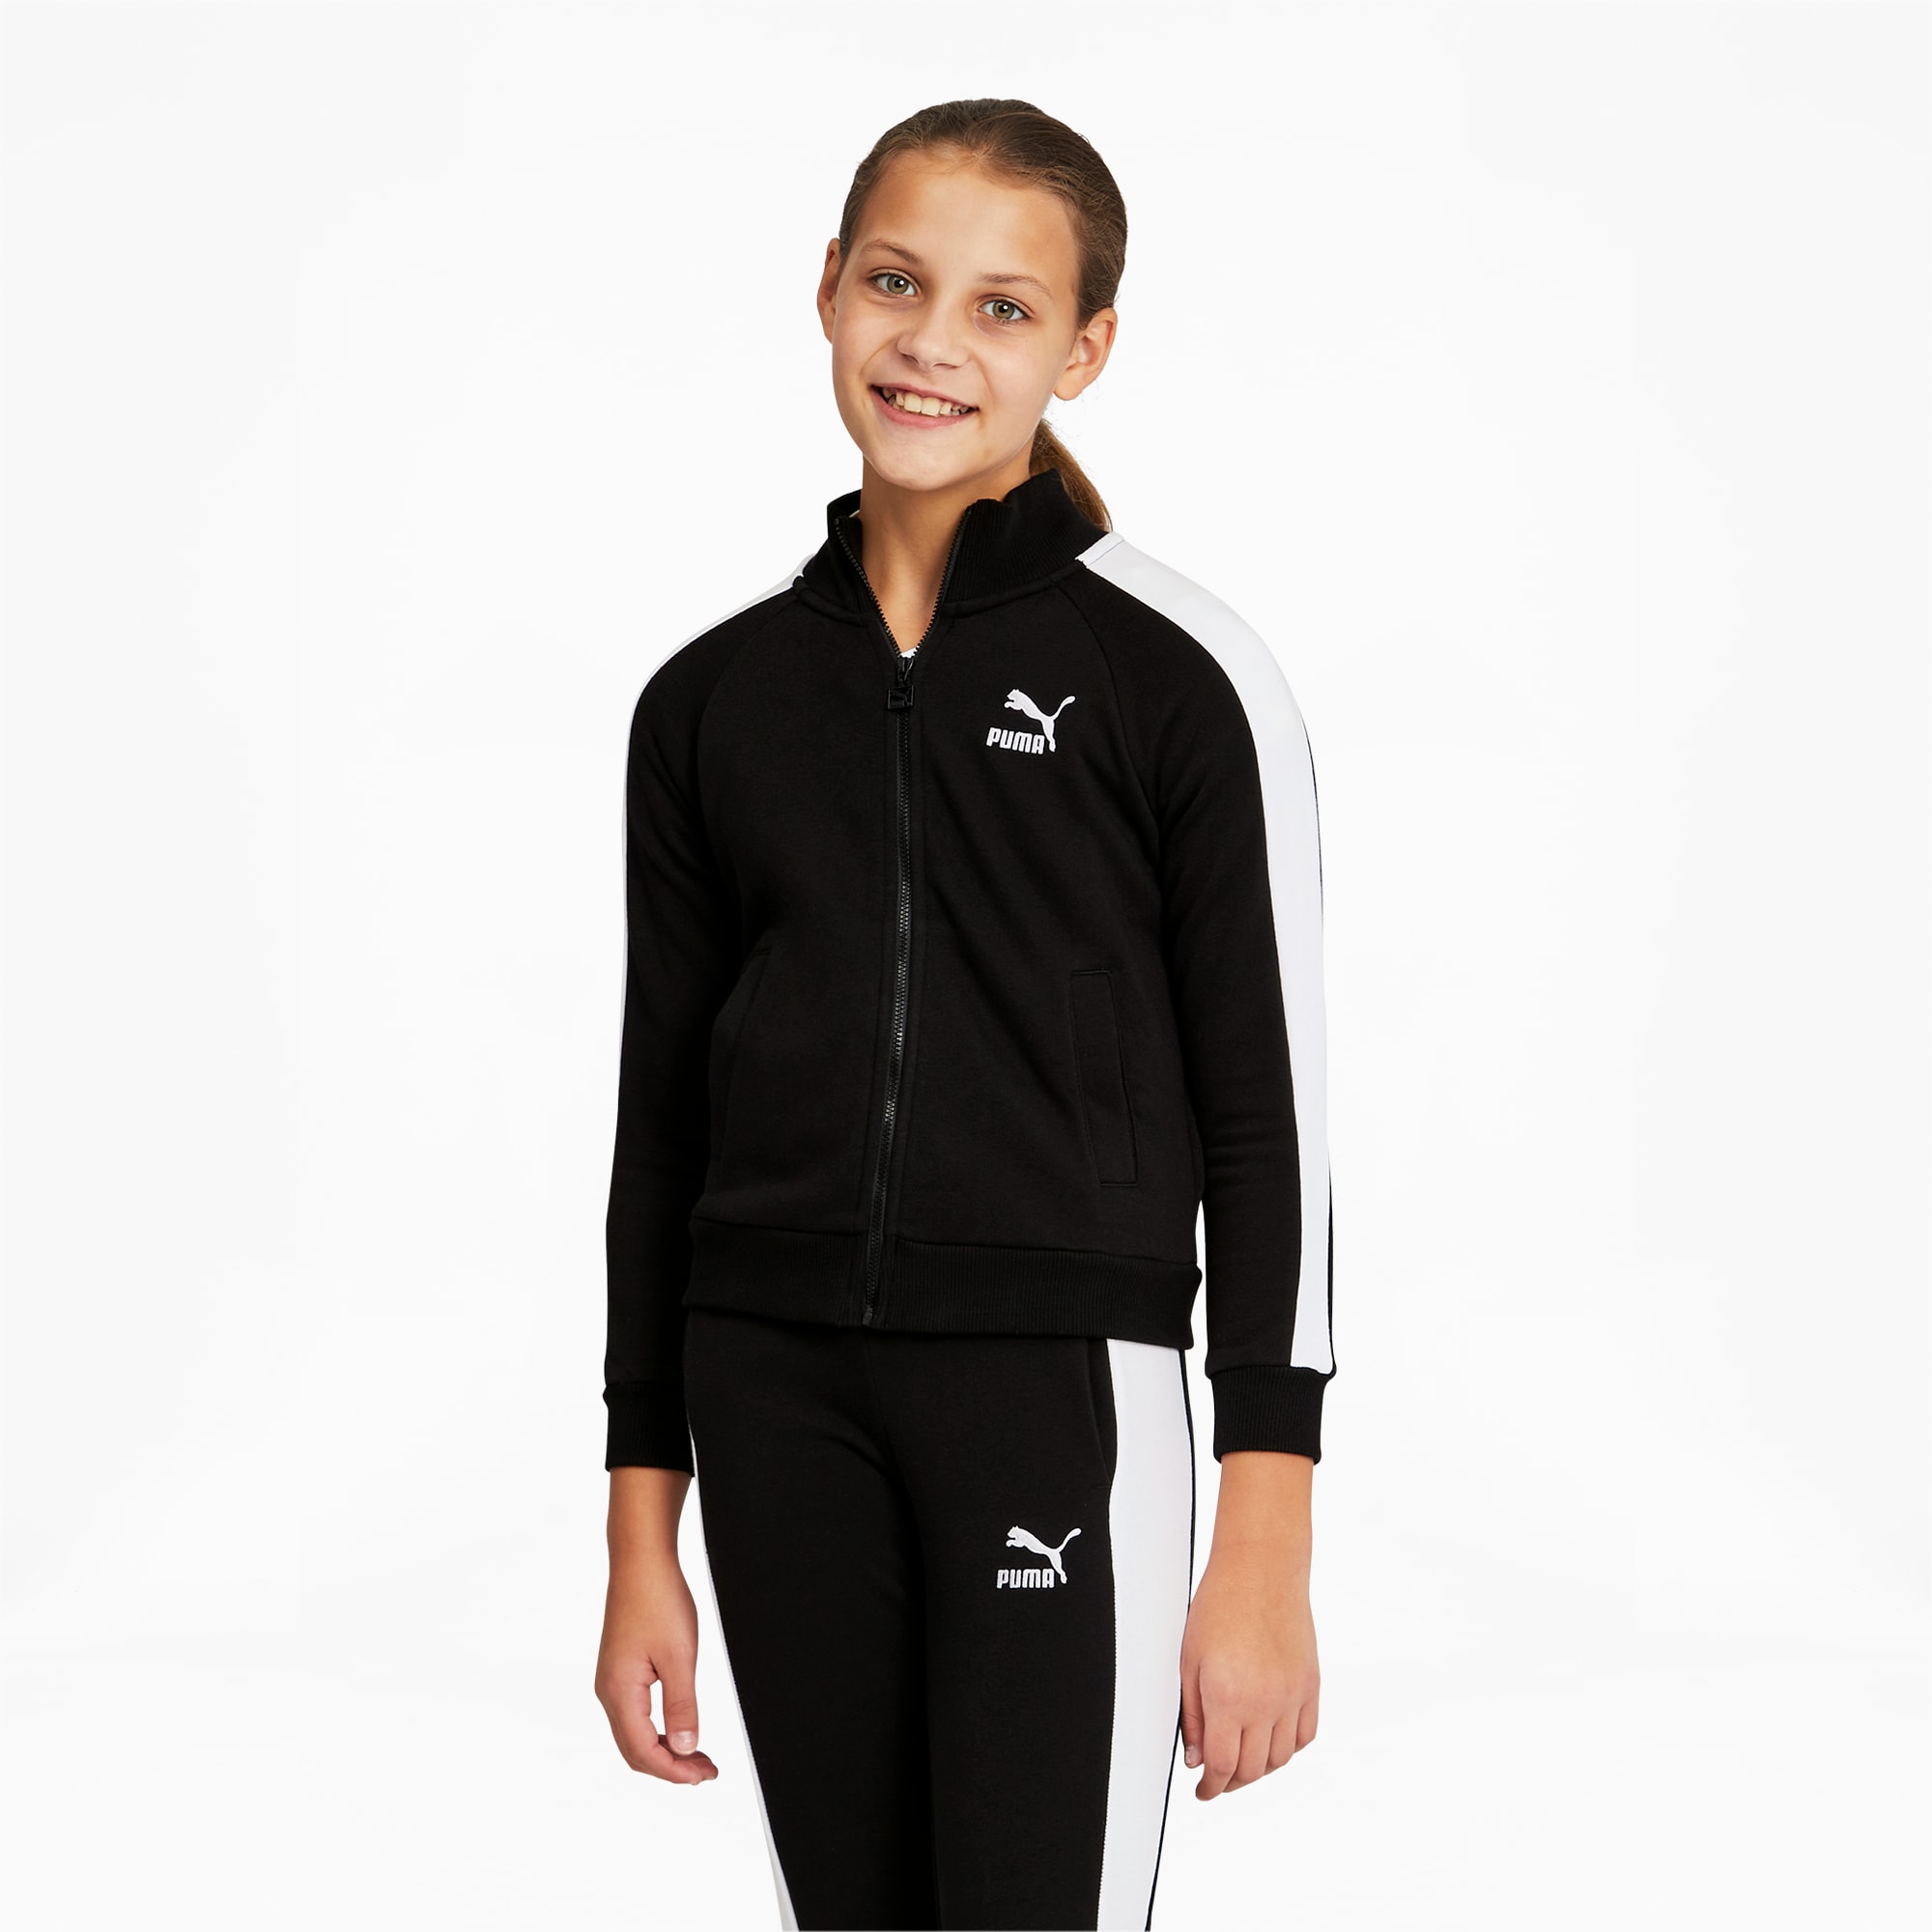 PUMA Classics T7 Trainingsjacke Für Teenager Für Kinder, Schwarz, Größe: 110, Kleidung